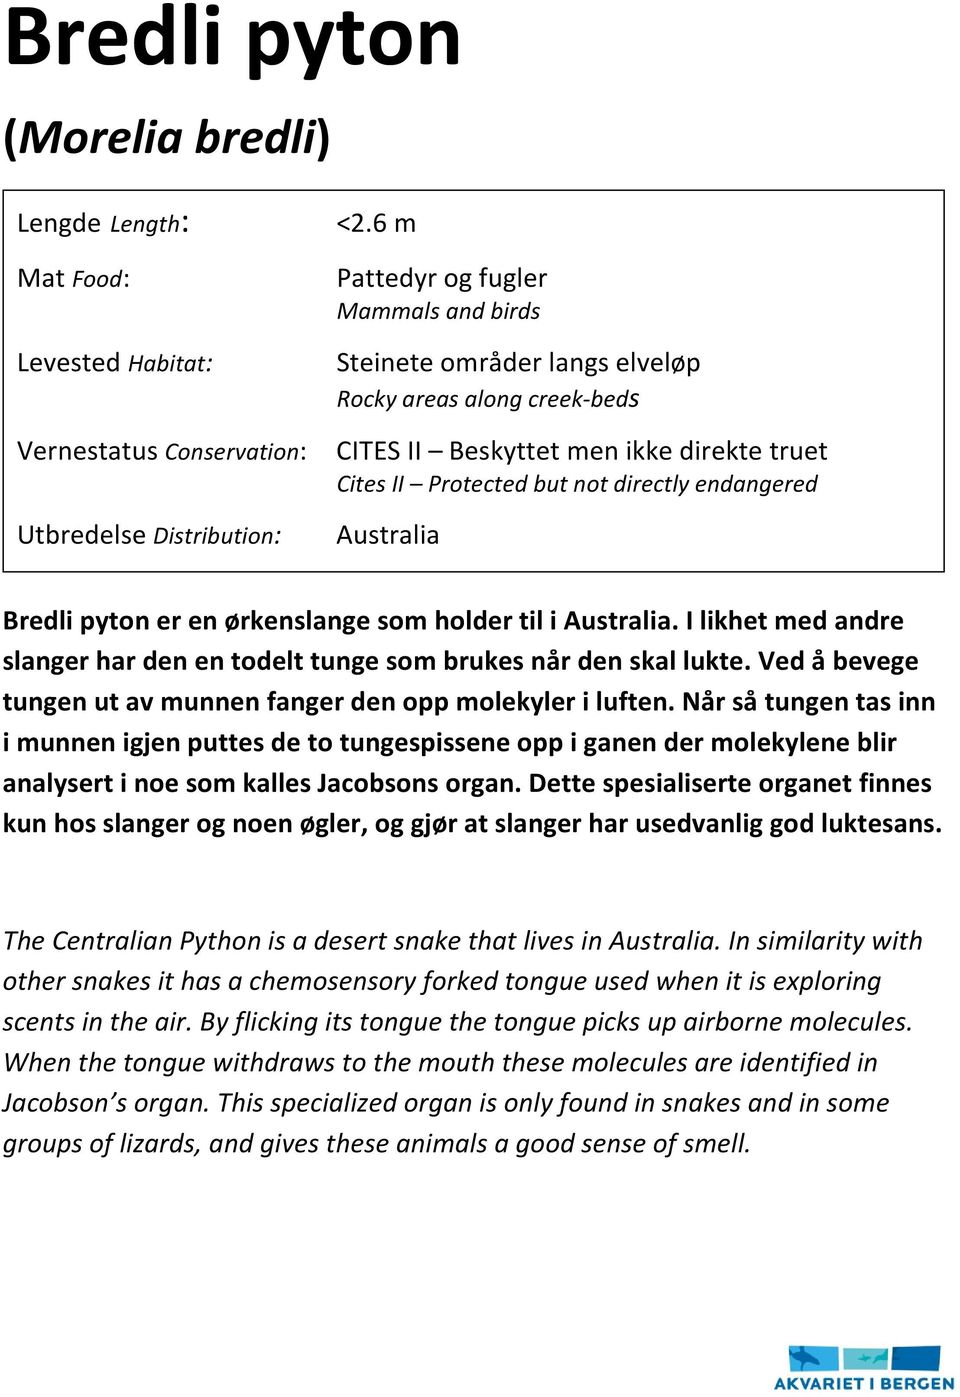 Bredli pyton er en ørkenslange som holder til i Australia. I likhet med andre slanger har den en todelt tunge som brukes når den skal lukte.